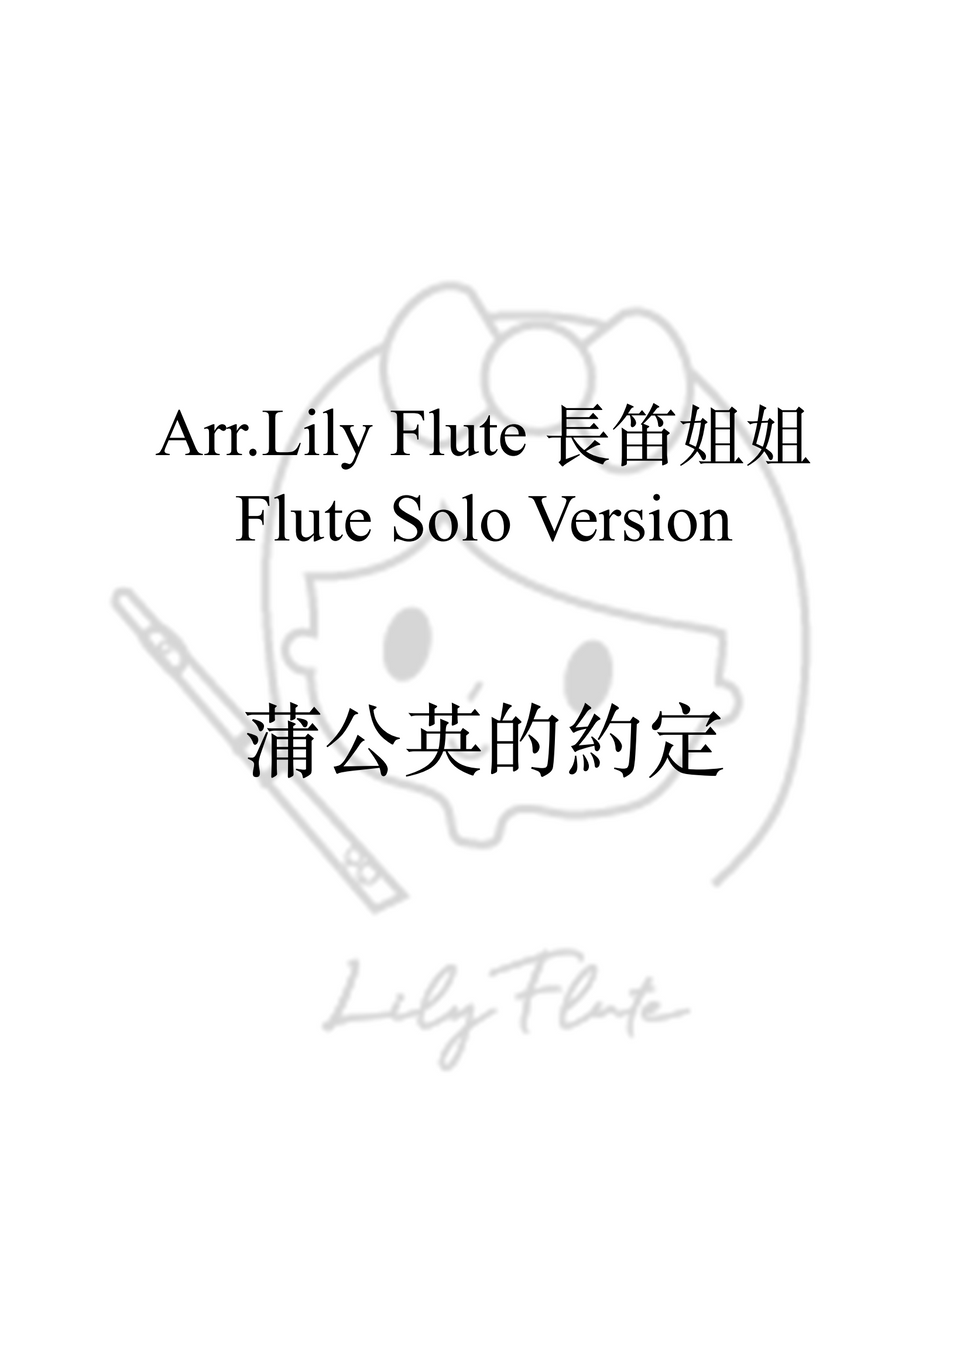 不能說的秘密 - 蒲公英的約定 (獨奏) by Lily Flute 長笛姐姐